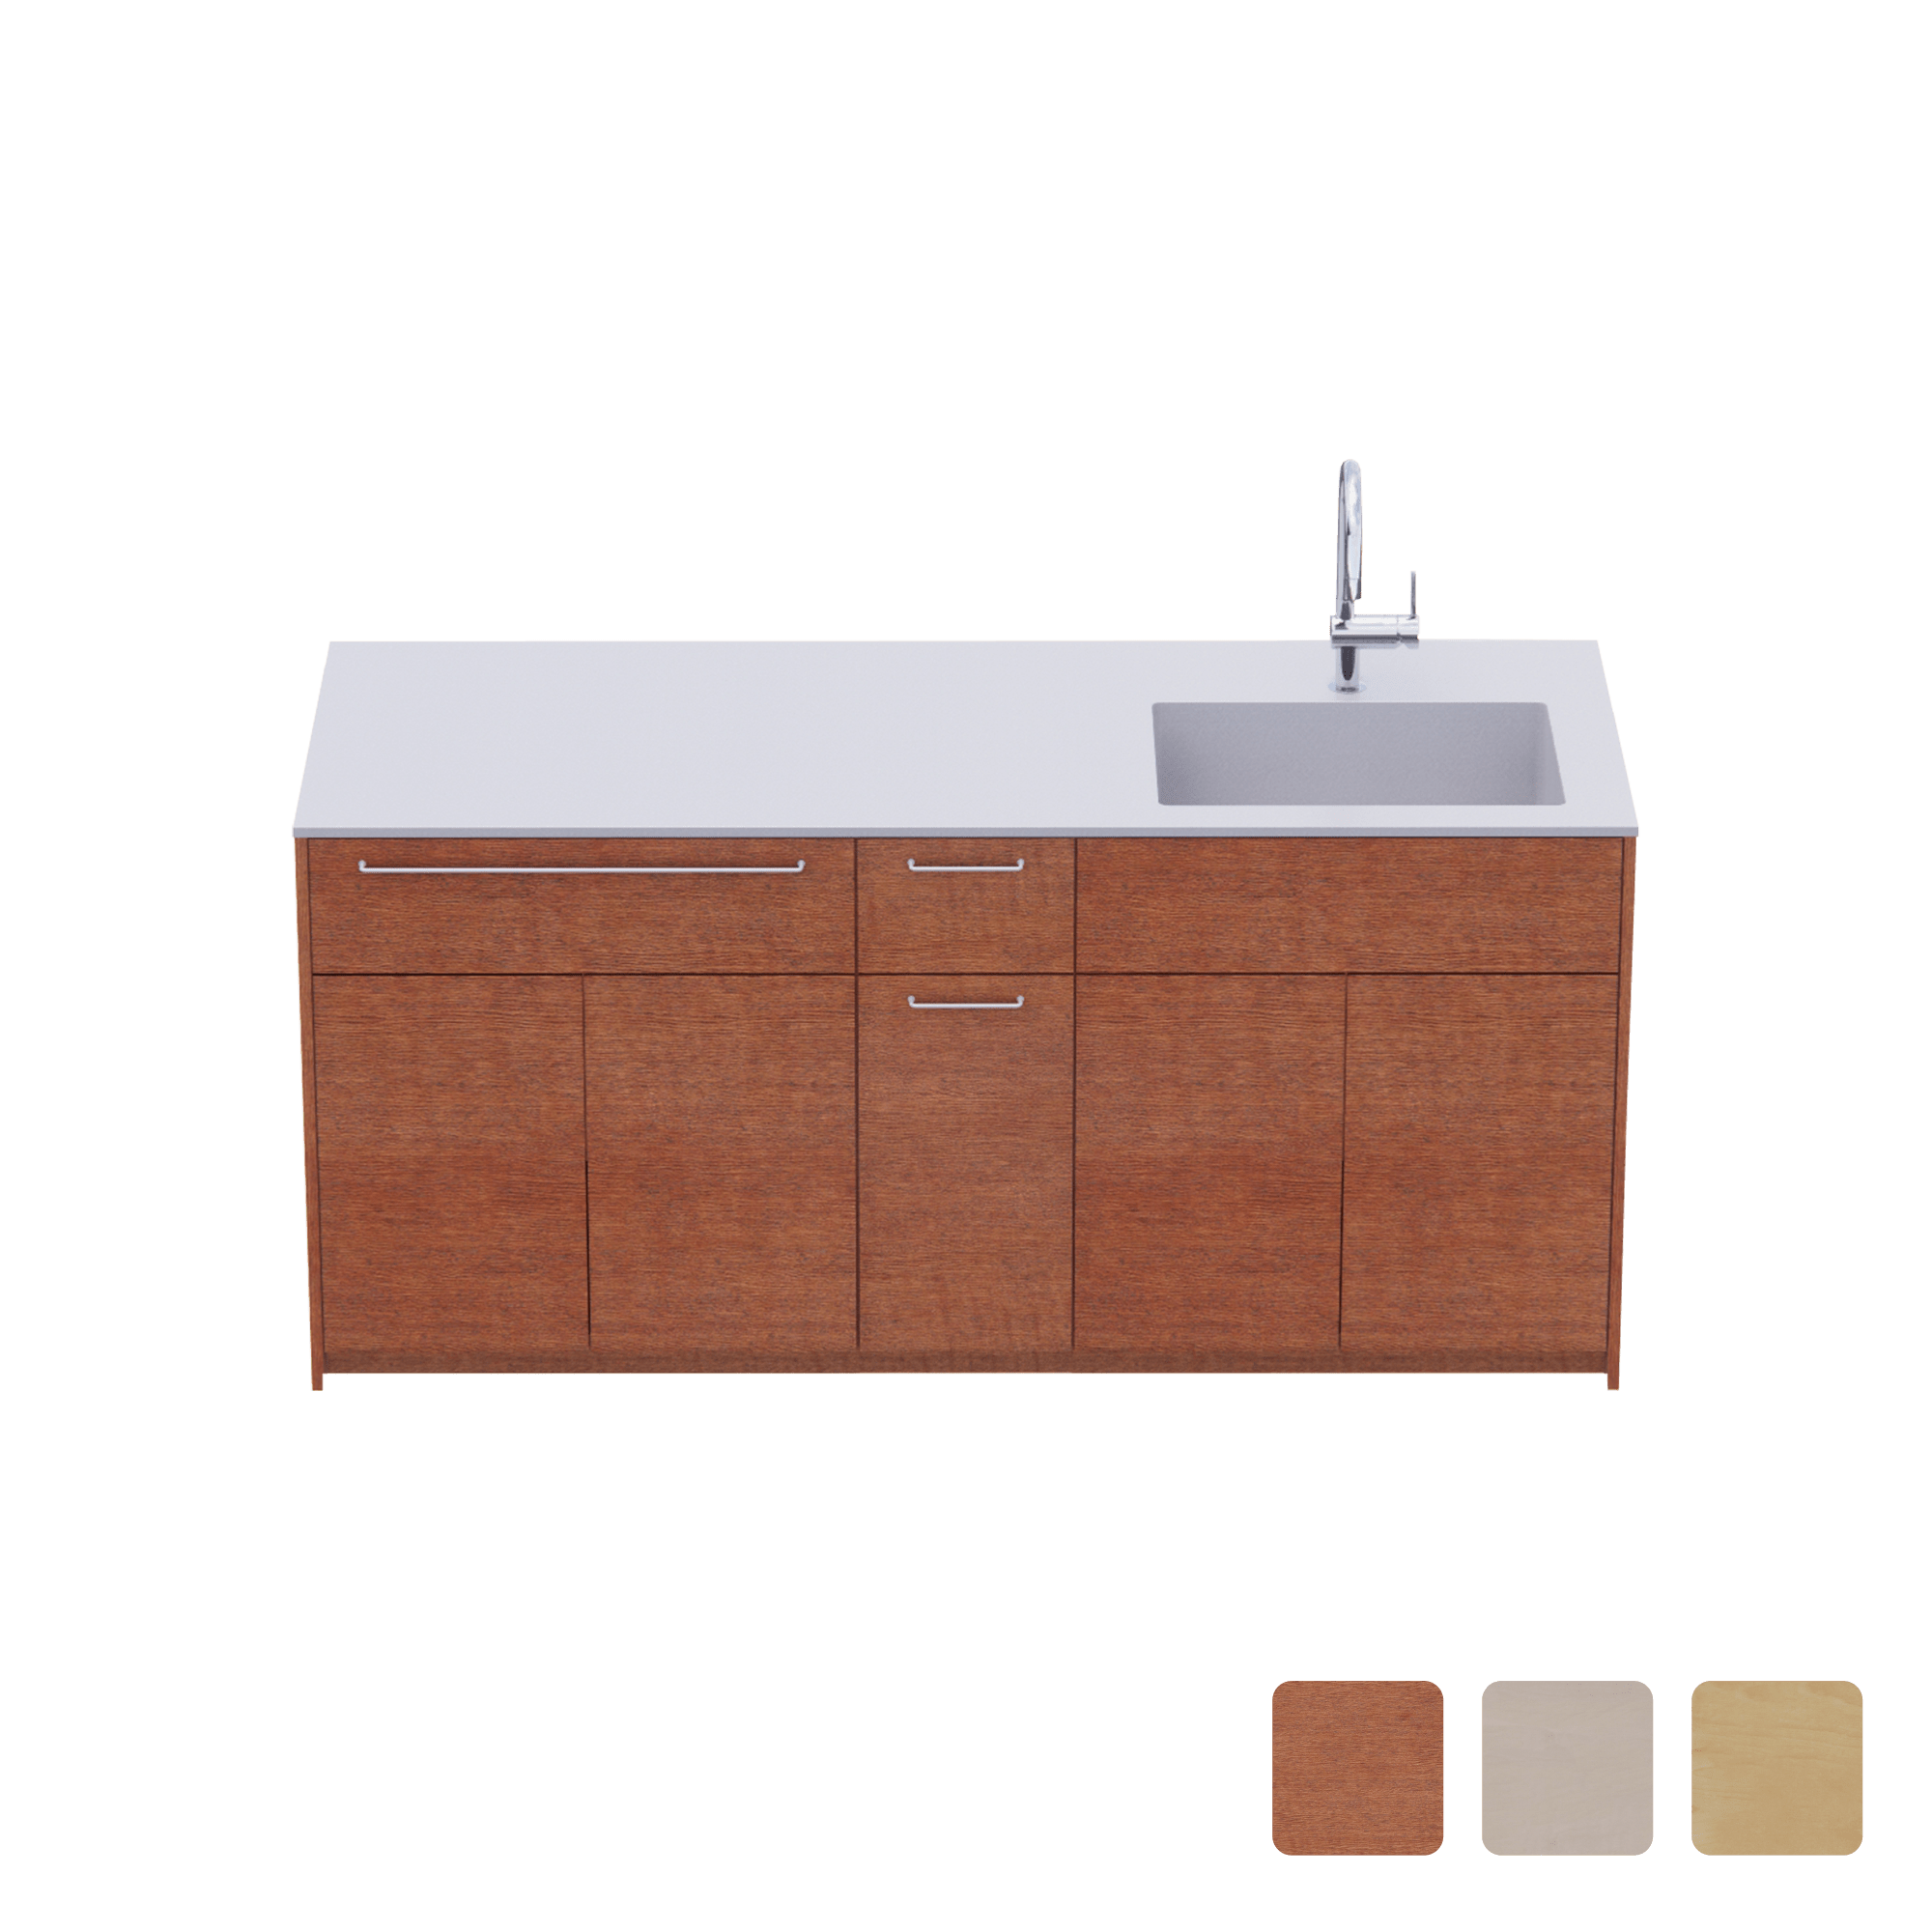 木製システムキッチン 対面型 W1840・コンロなし / オーブンなし / 食洗機なし